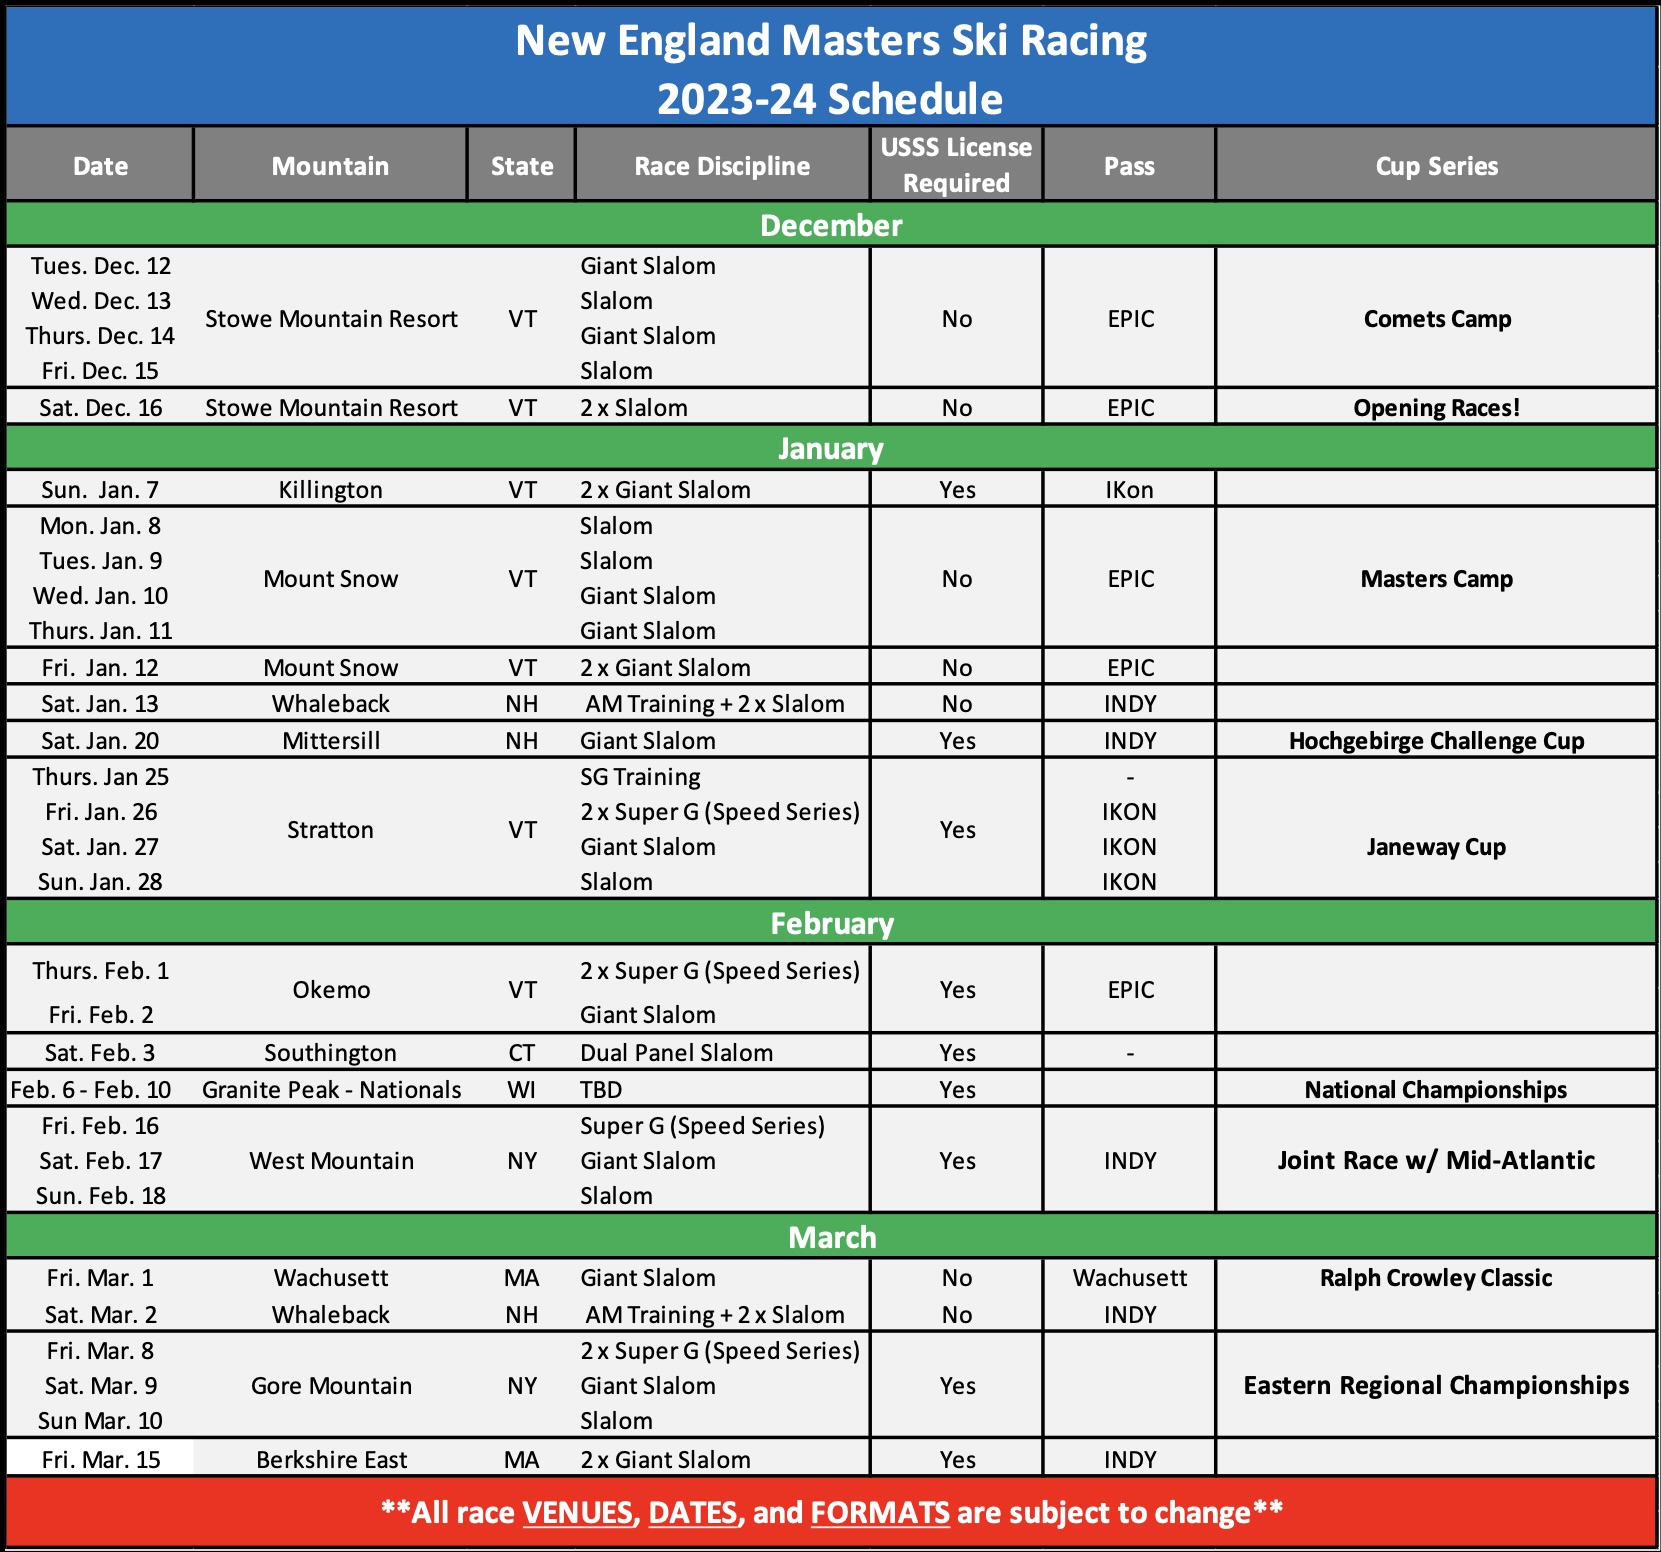 NEMS Race Schedule 2023-24